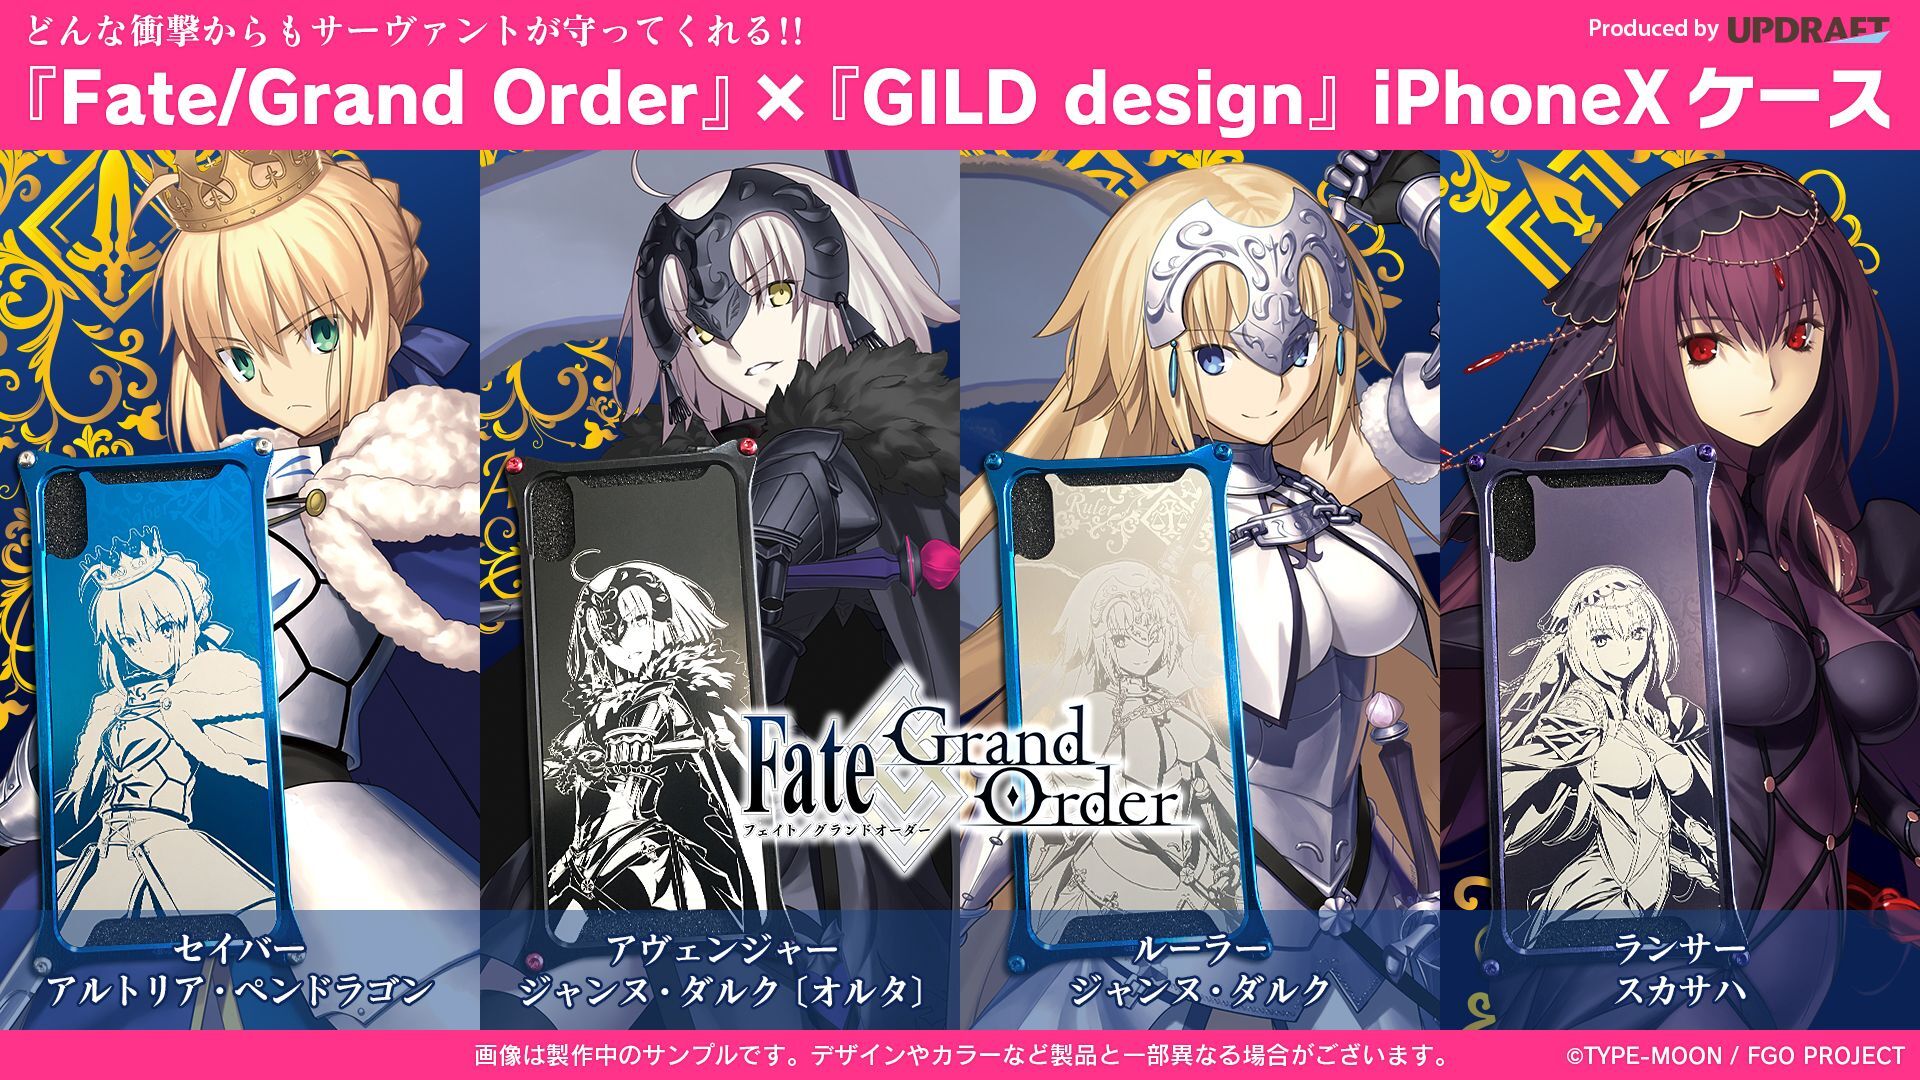 どんな衝撃からもサーヴァントが守ってくれる 累計1 0万dl突破 Fate Grand Order Gild Design Iphonexケース Ud Premium で予約開始 株式会社アップドラフトのプレスリリース